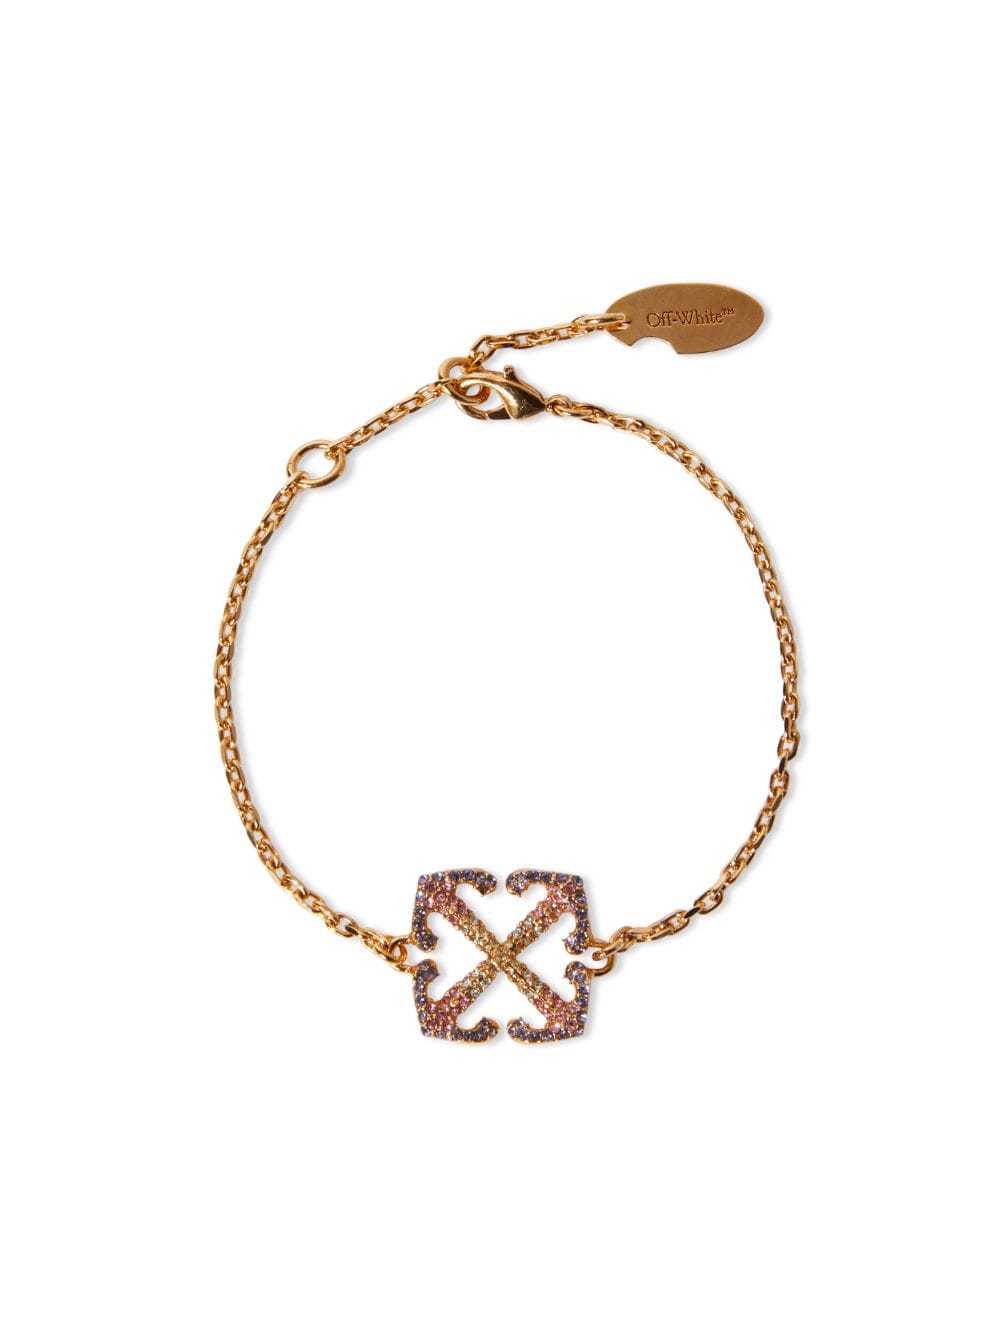 Louis Vuitton Gamble Crystals Tone Bracelet